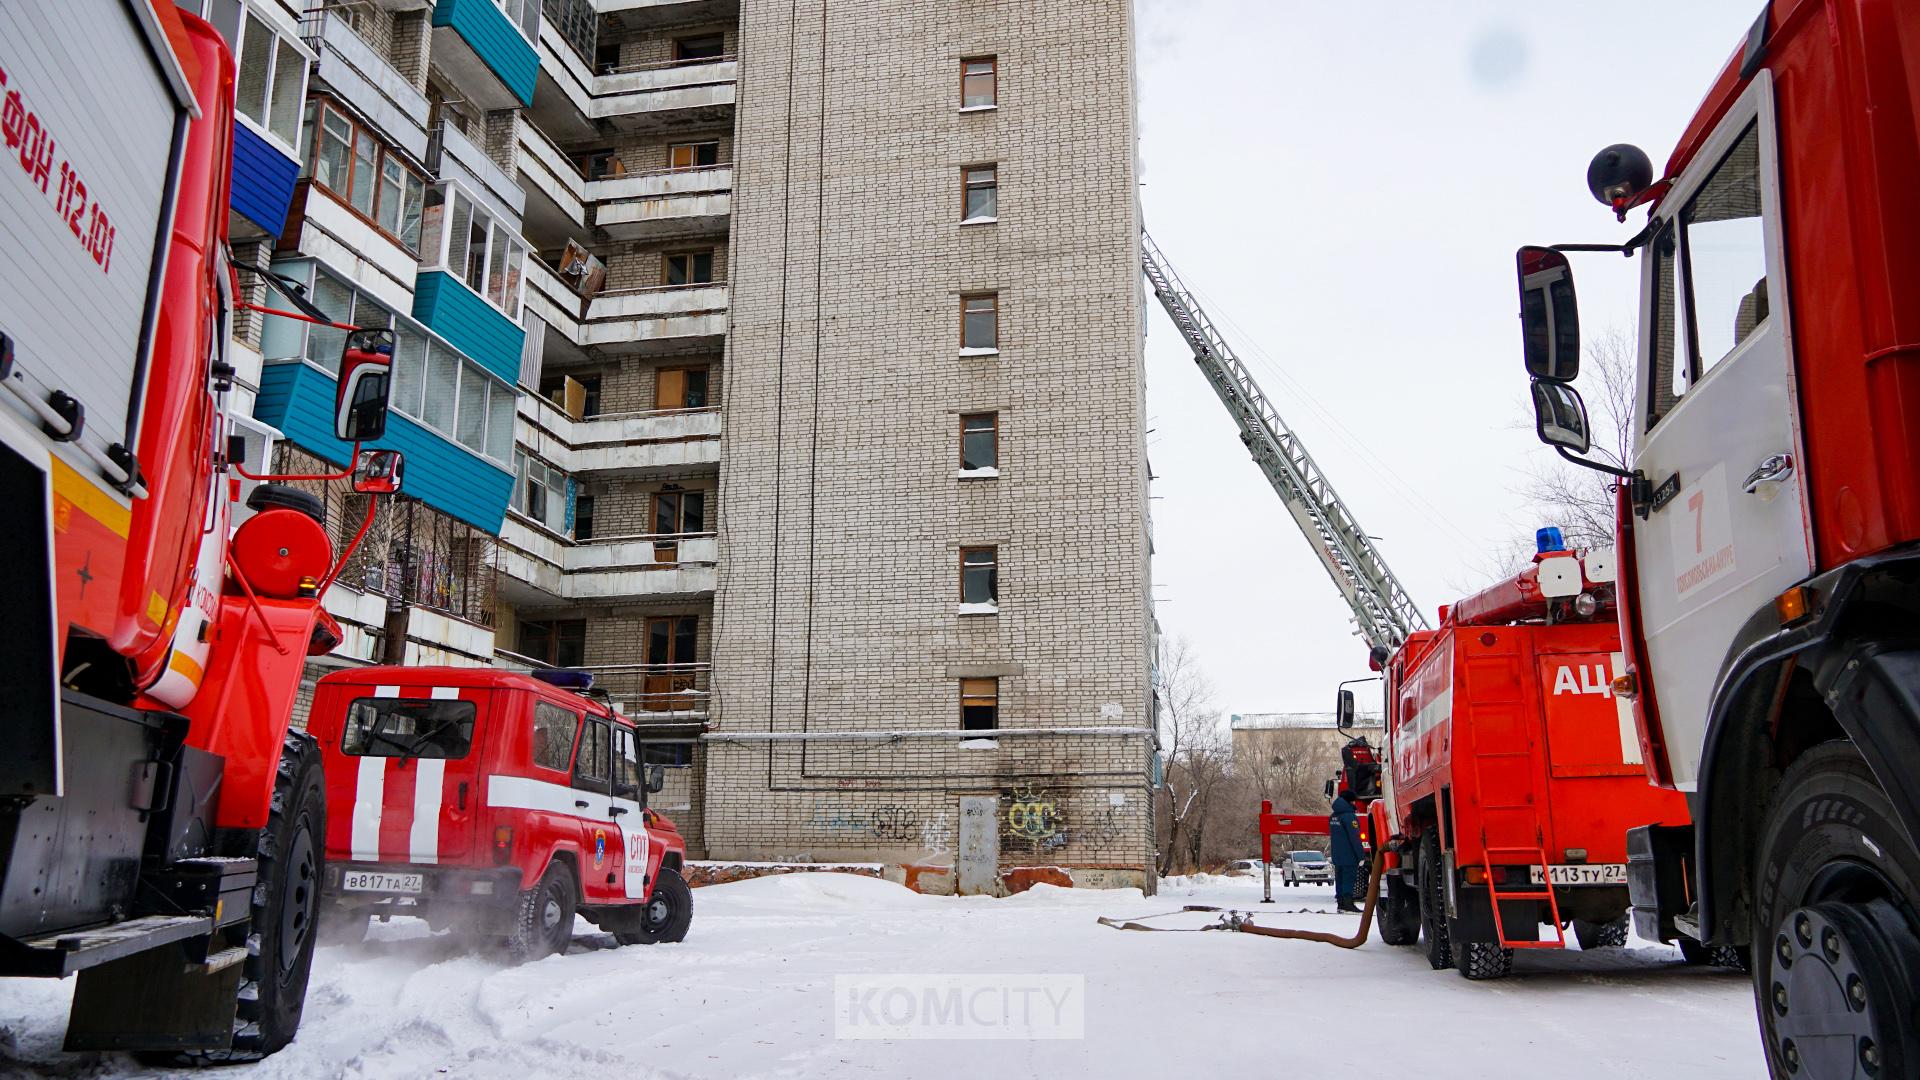 Пожарные спасли двух человек из загоревшейся квартиры